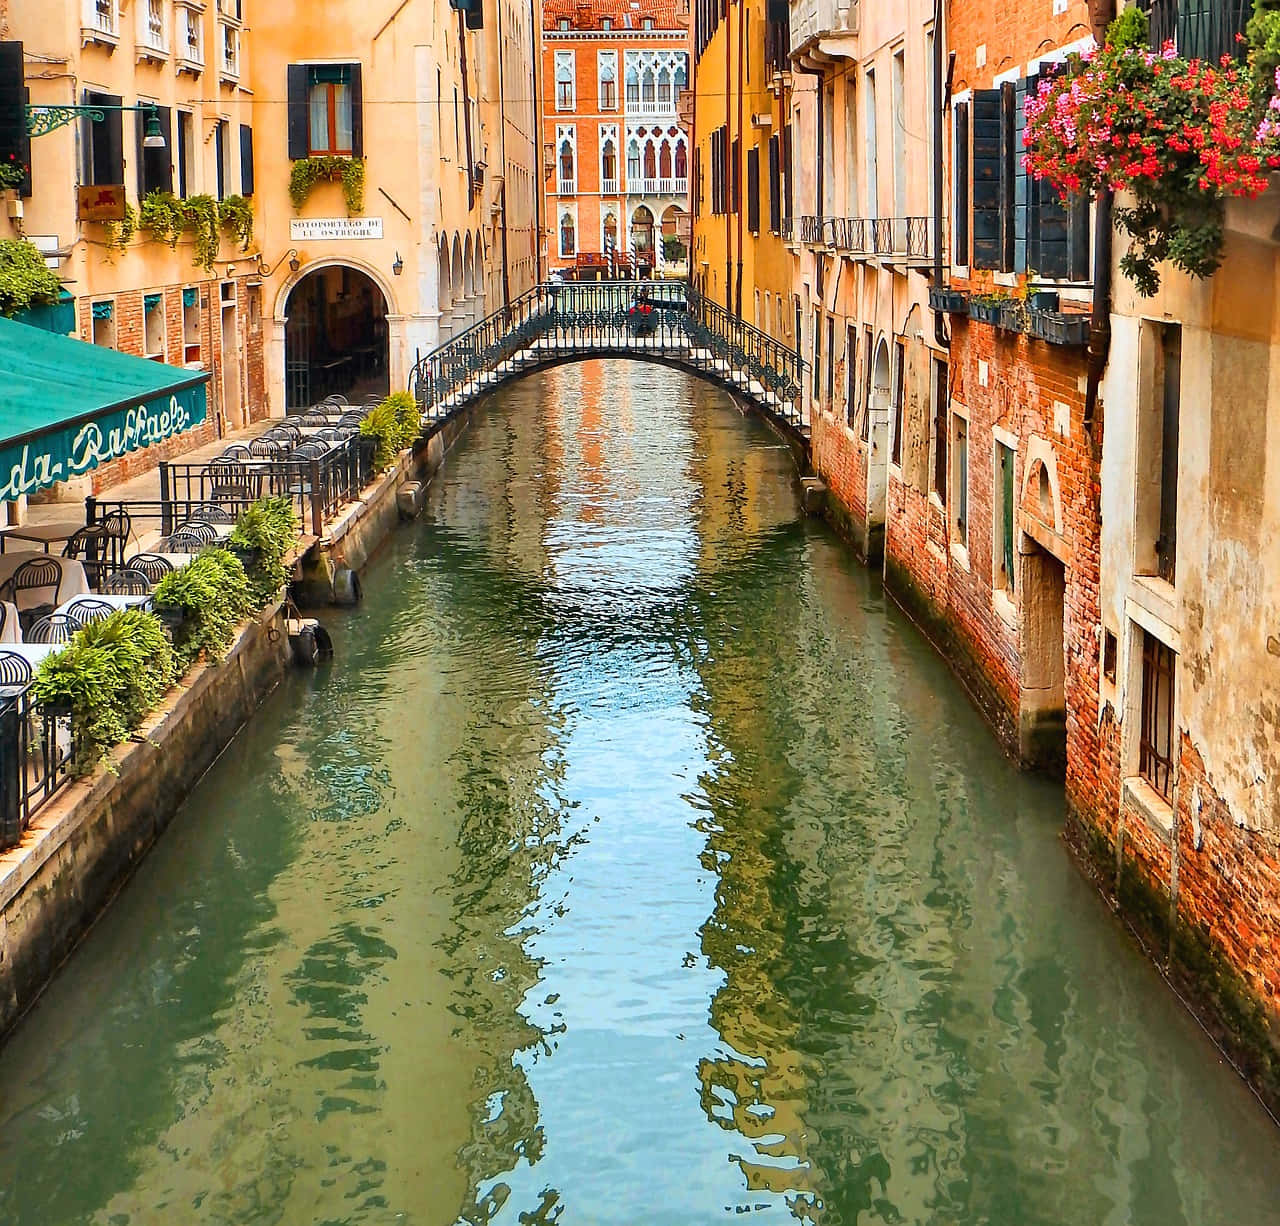 Enjoy the beauty of Italy